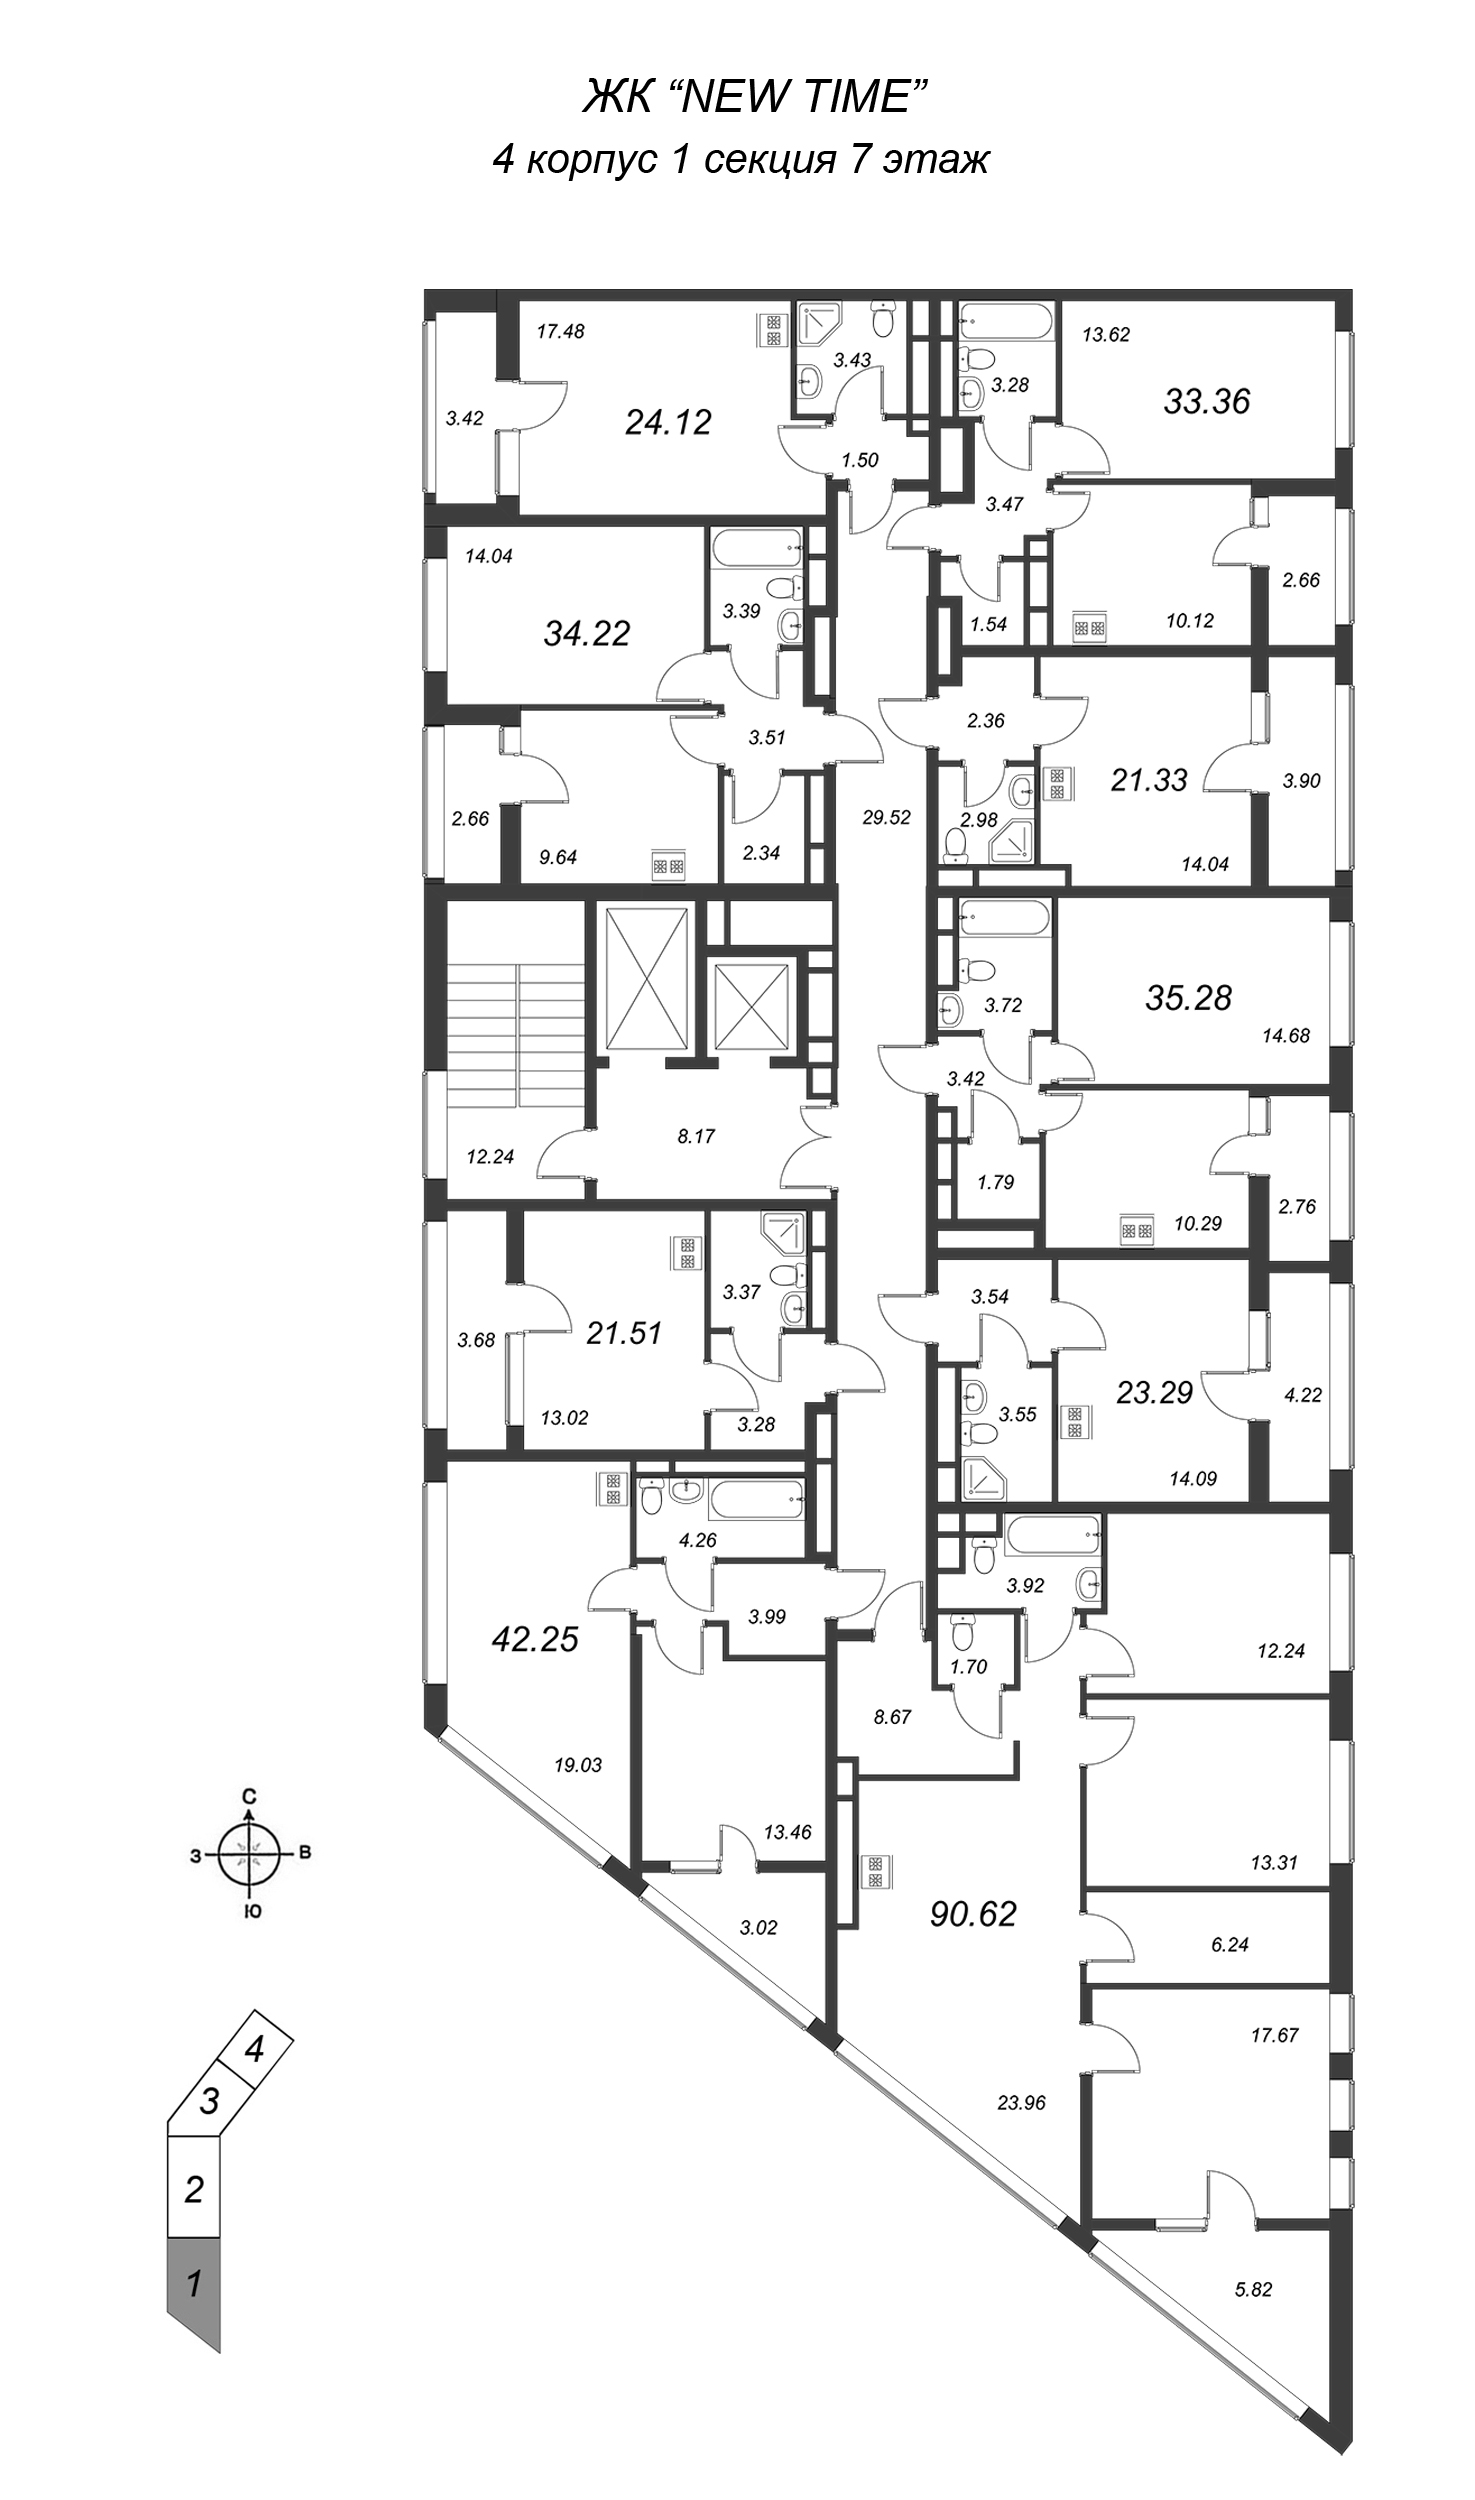 Квартира-студия, 23.29 м² в ЖК "NEW TIME" - планировка этажа